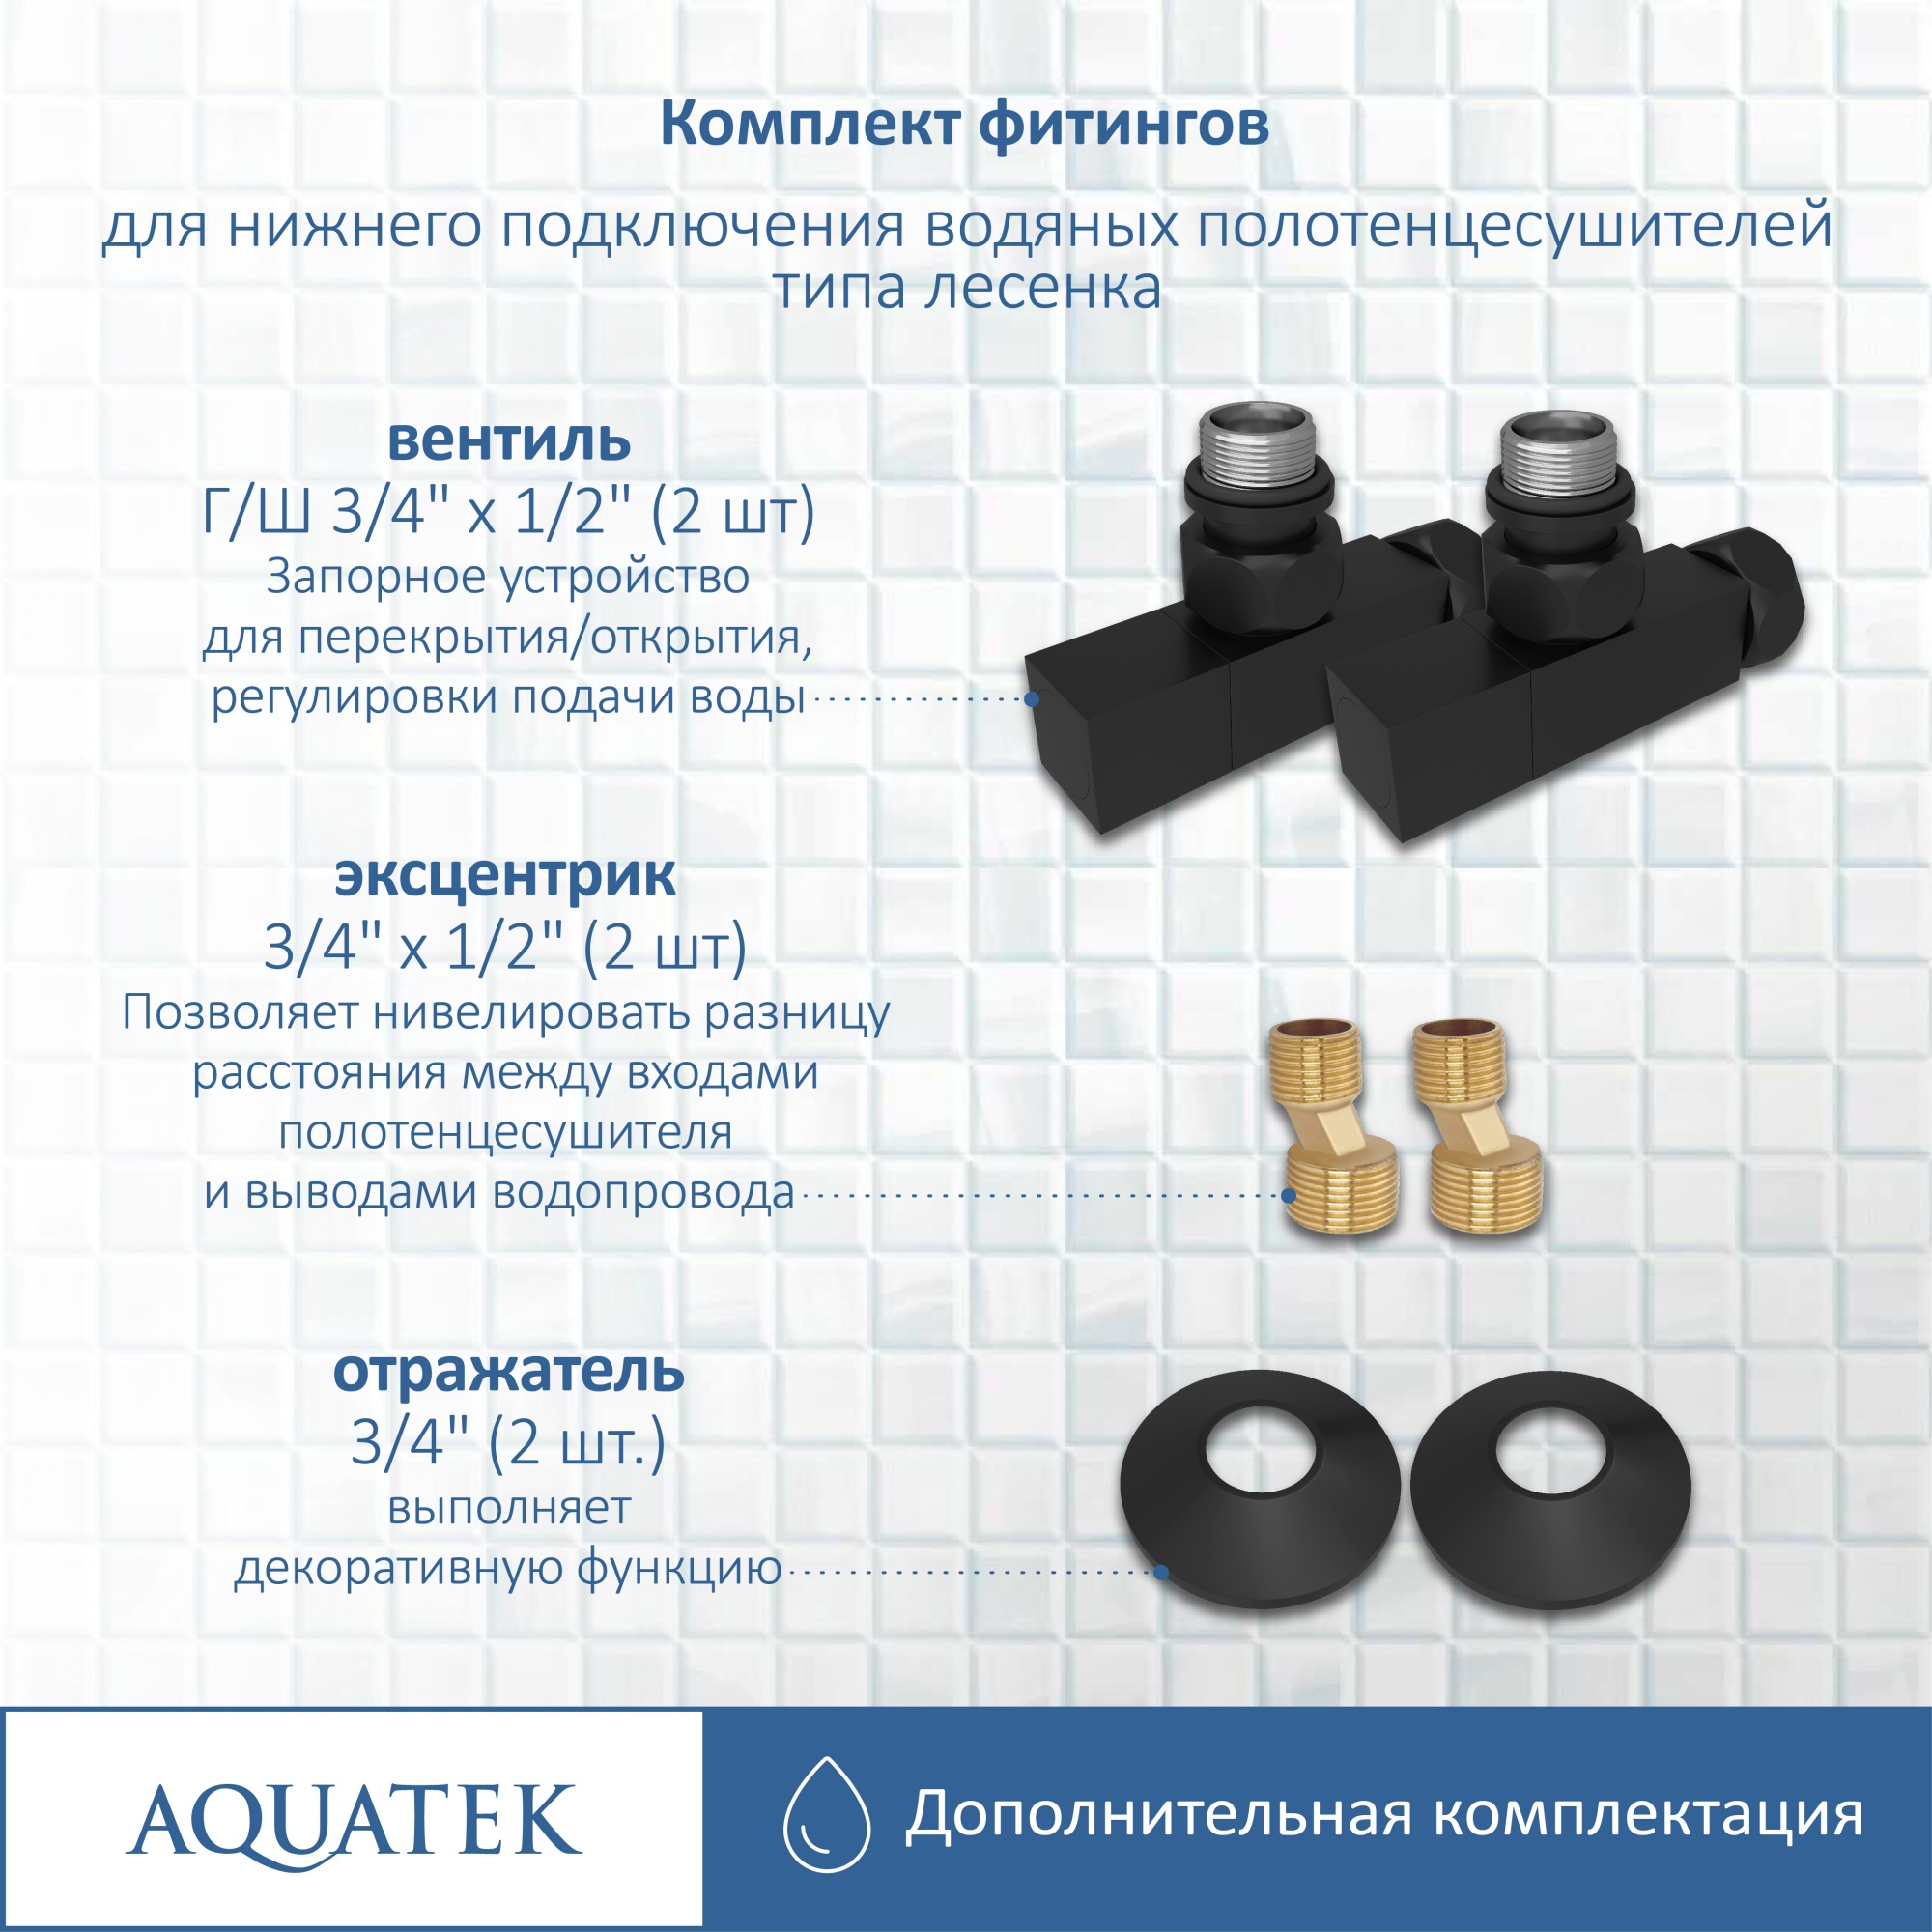 Комплект фитингов для нижнего подключения водяных полотенцесушителей Aquatek AQ 2020BL